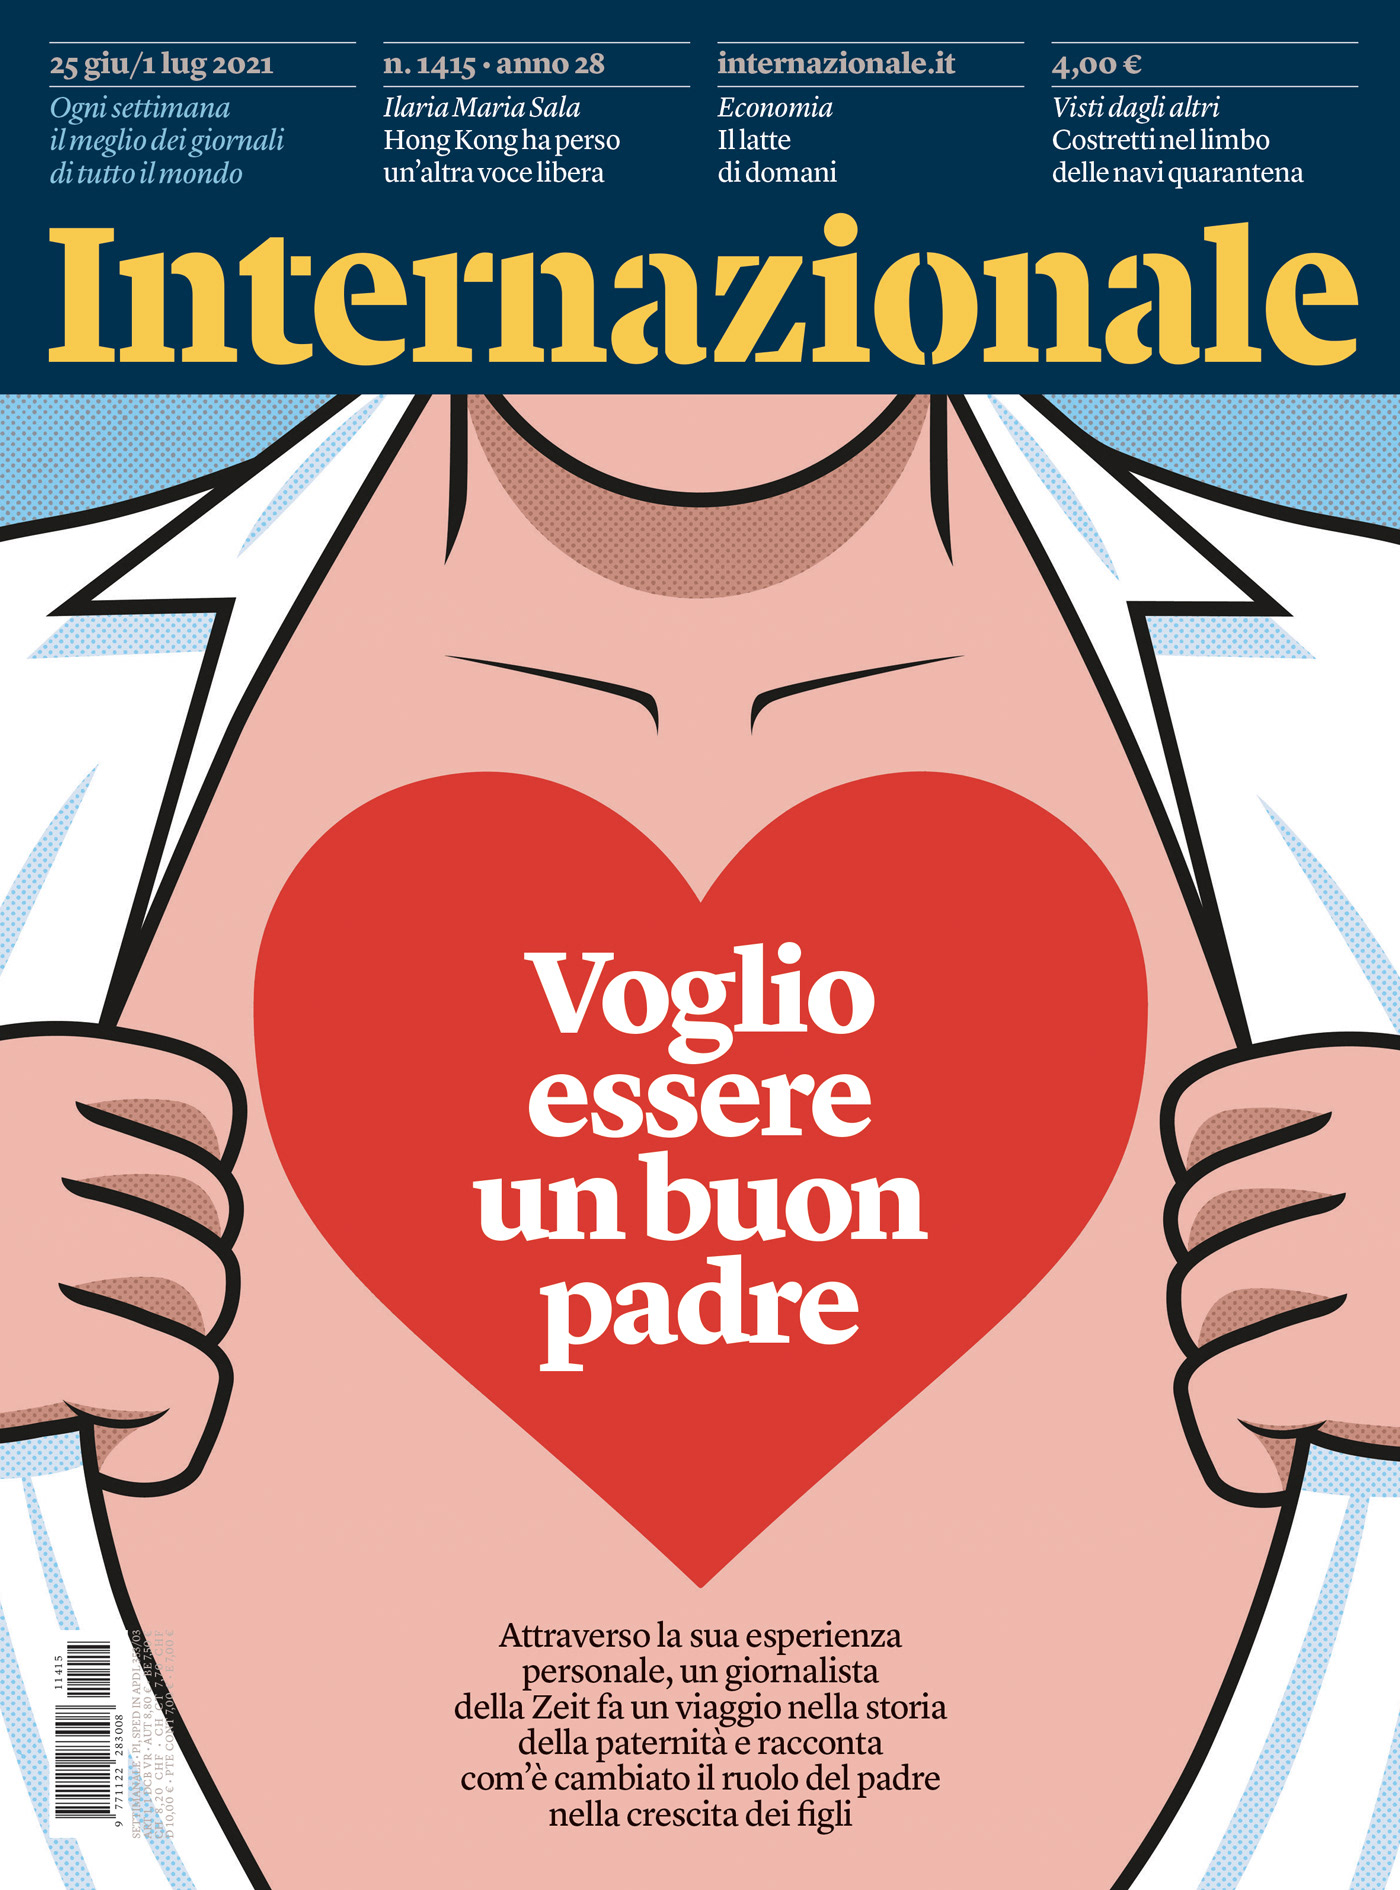 cover editorial father heart ILLUSTRATION  internazionale magazine Magazine Cover SuperHero vector